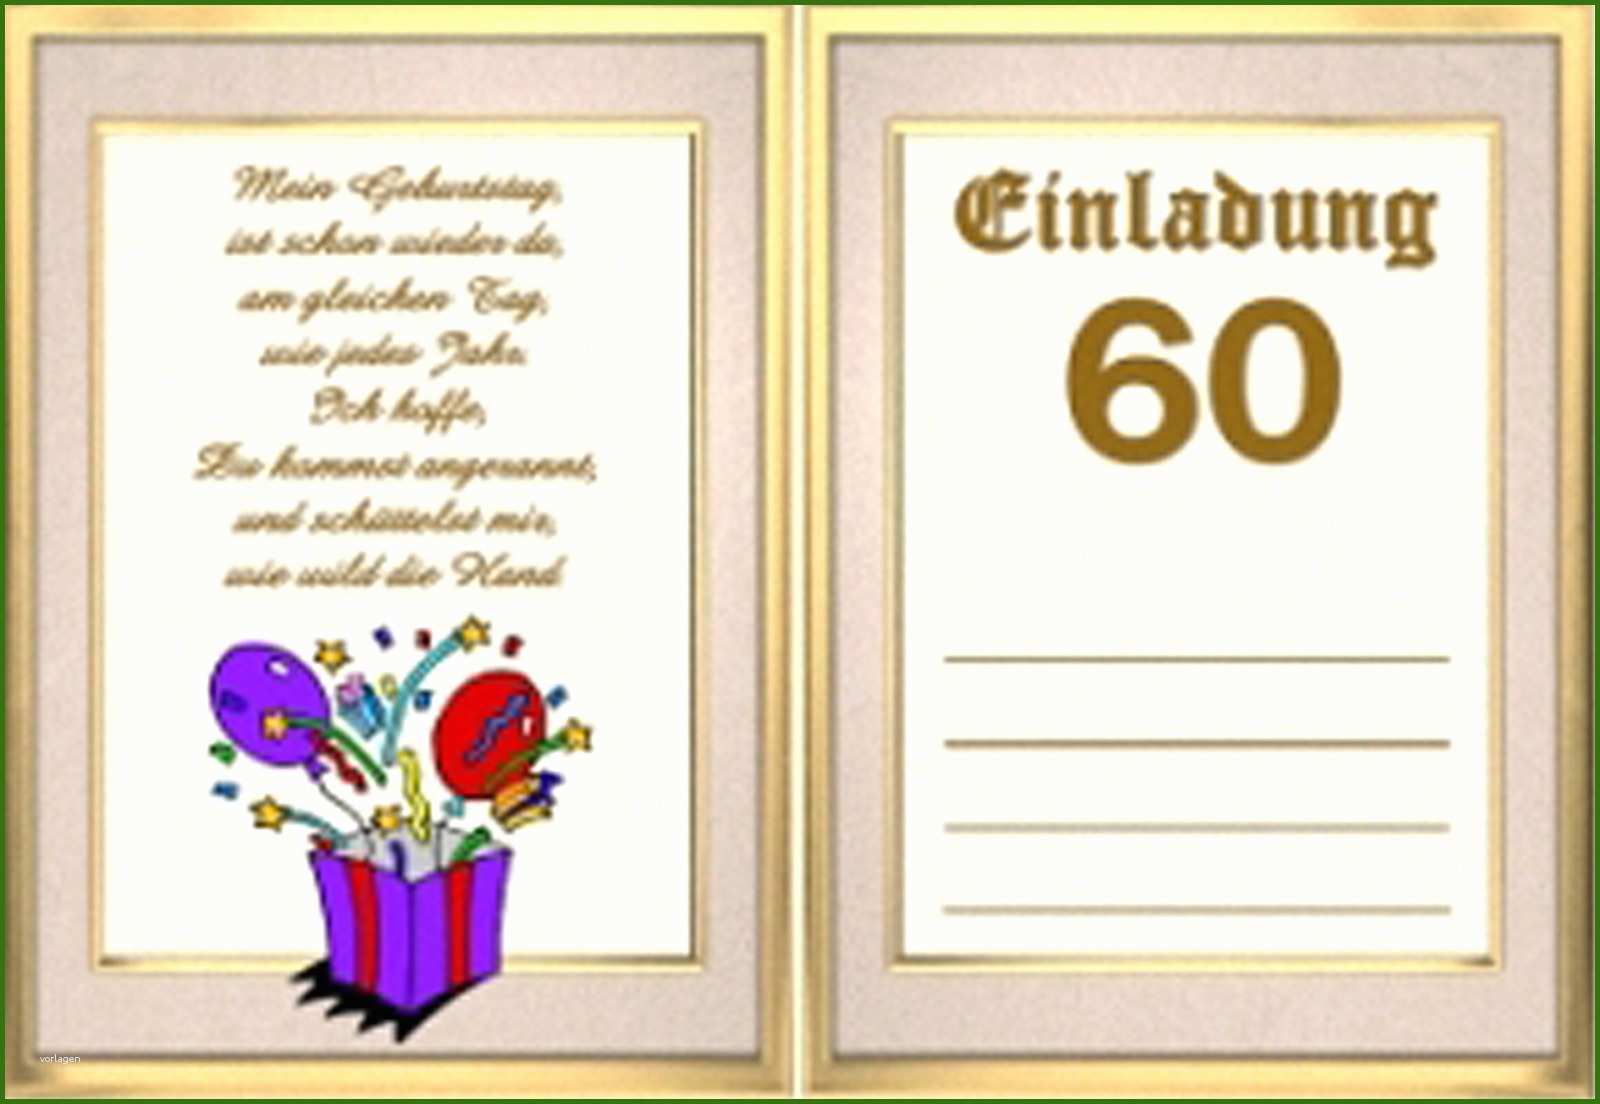 019 Word Vorlagen Einladung 60 Geburtstag 60 Geburtstag Einladung